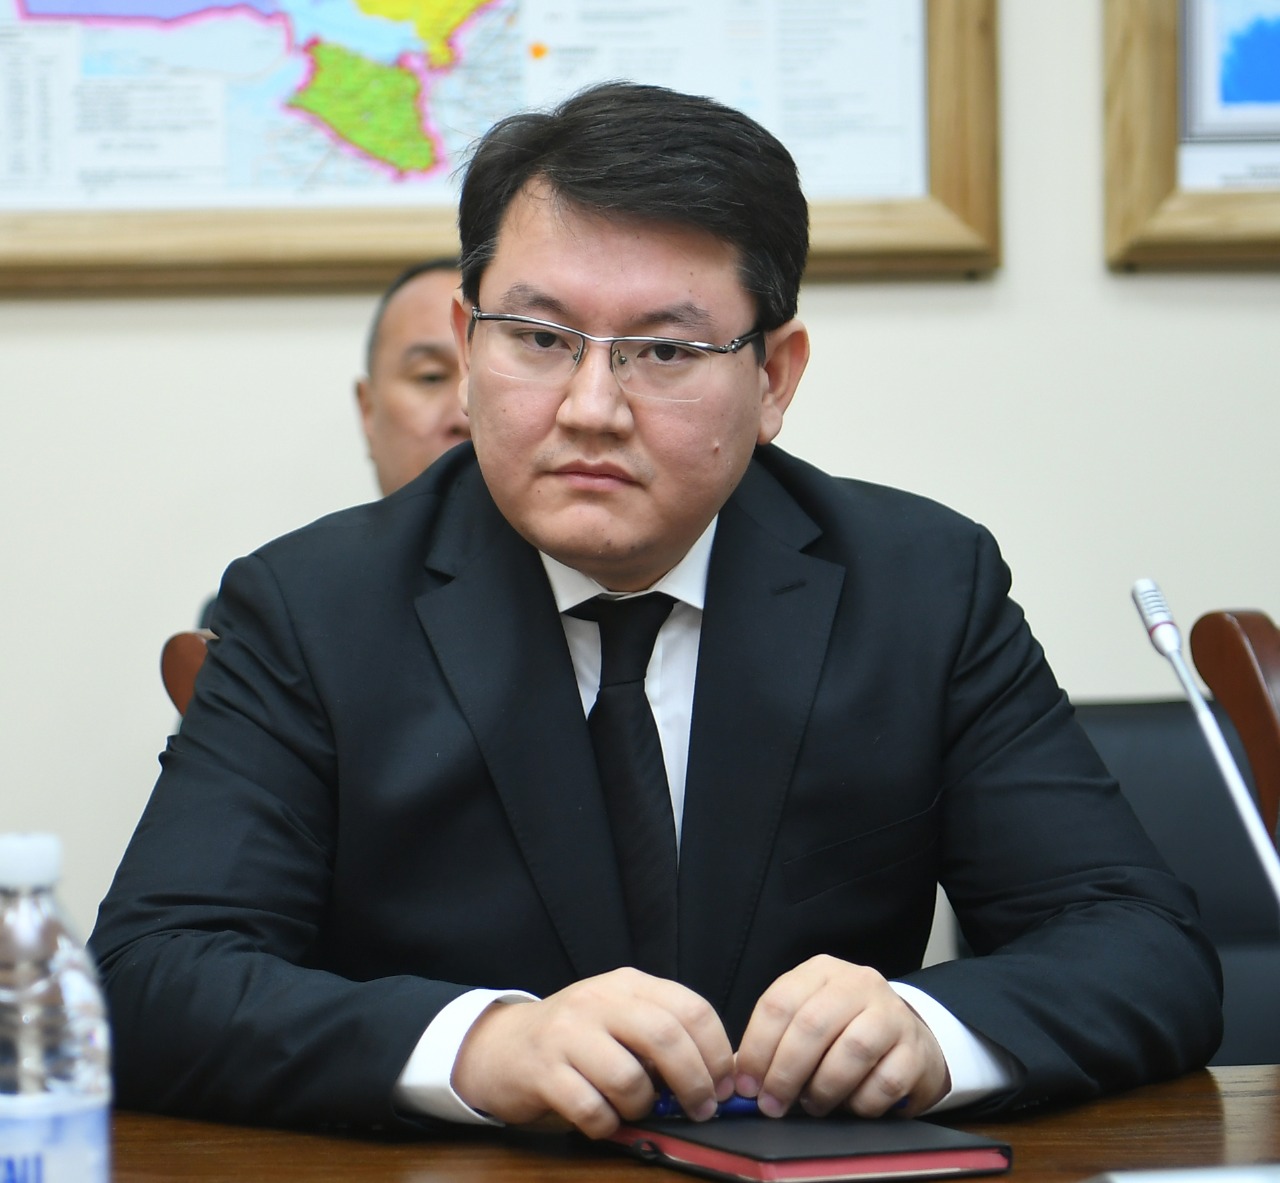 Мәлік Отарбаев Түркістан облысы әкімінің орынбасары қызметіне тағайындалды